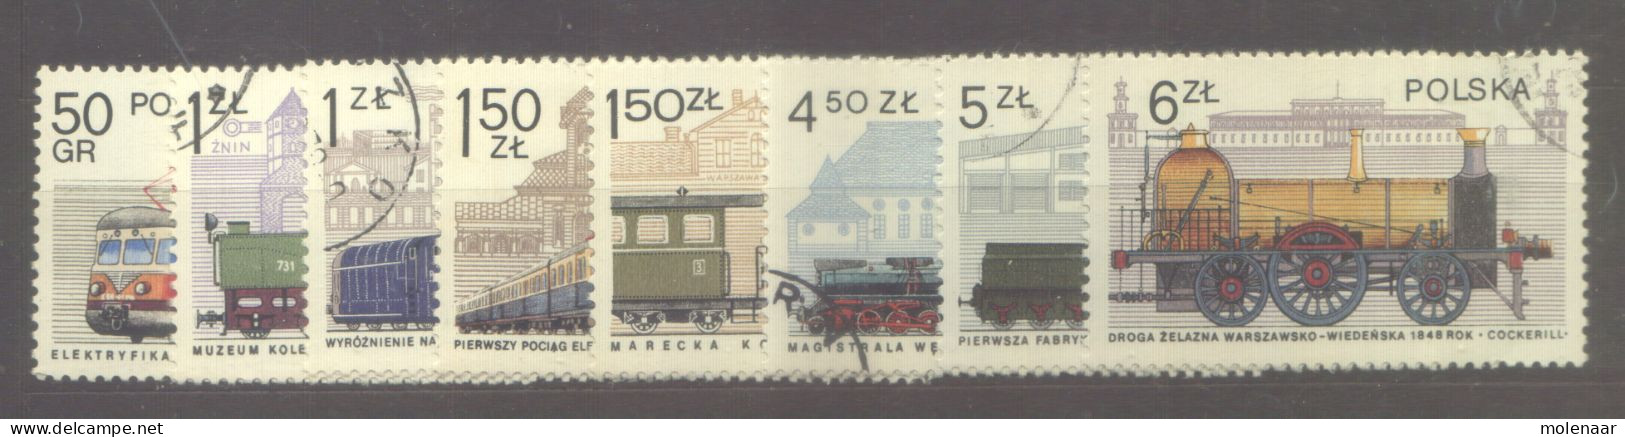 Postzegels > Europa > Polen > 1944-.... Republiek > 1971-80 > Gebruikt No. 2540-2547  (24152) - Gebruikt